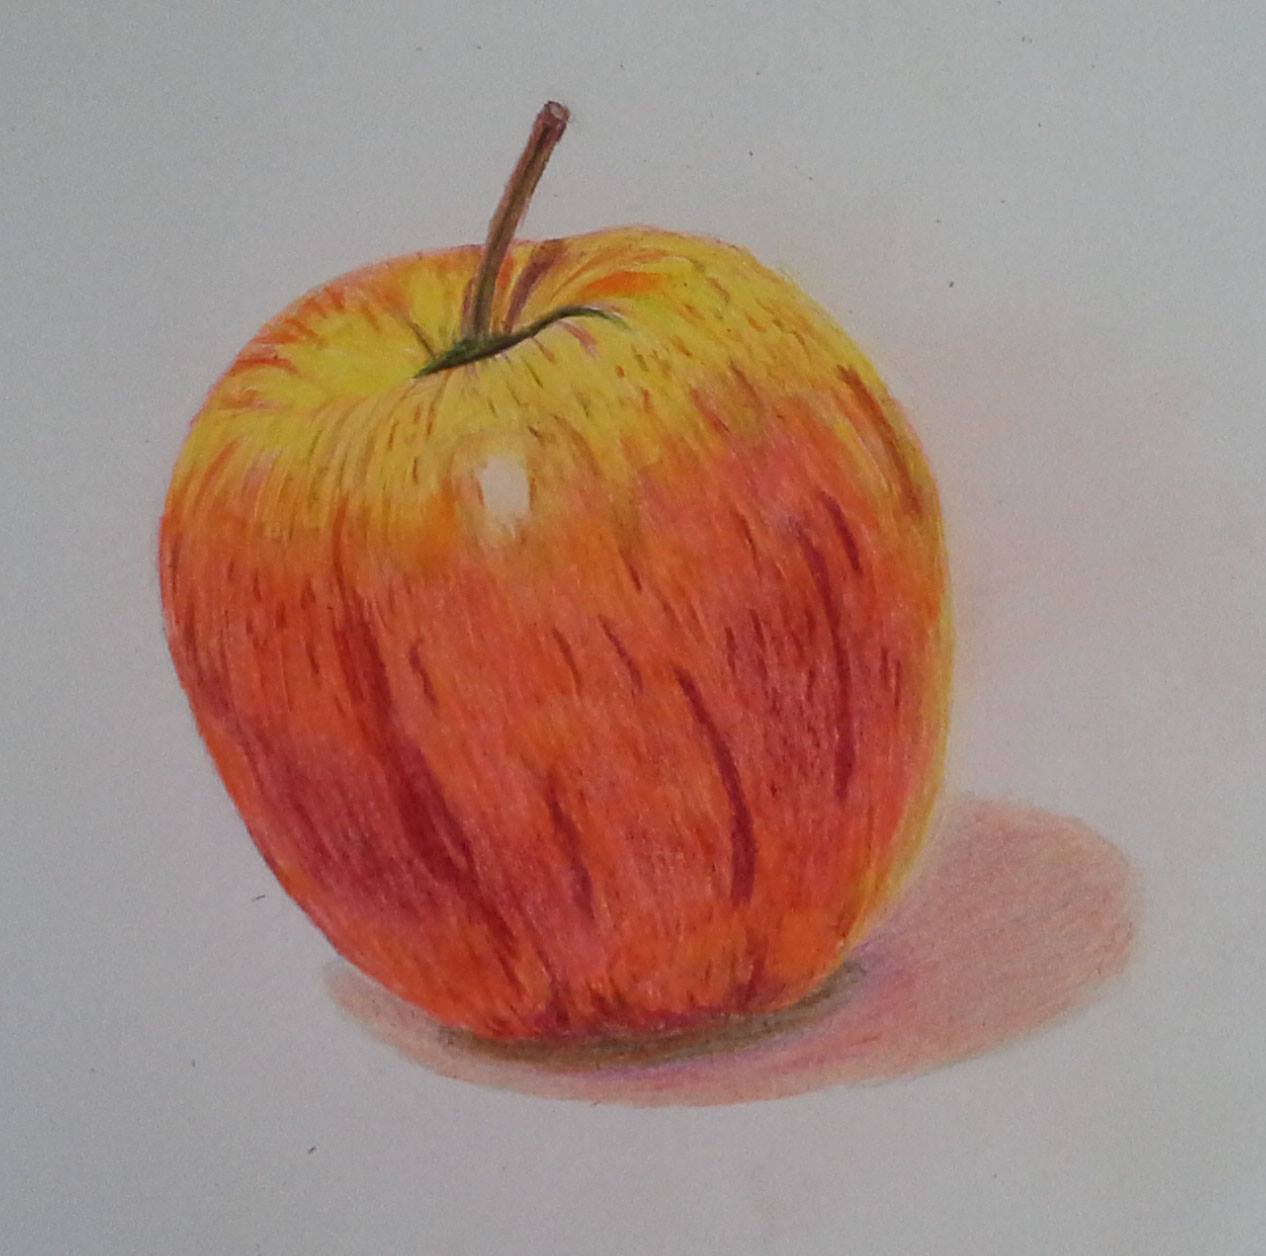 Juicy Apple by Maureen Myant